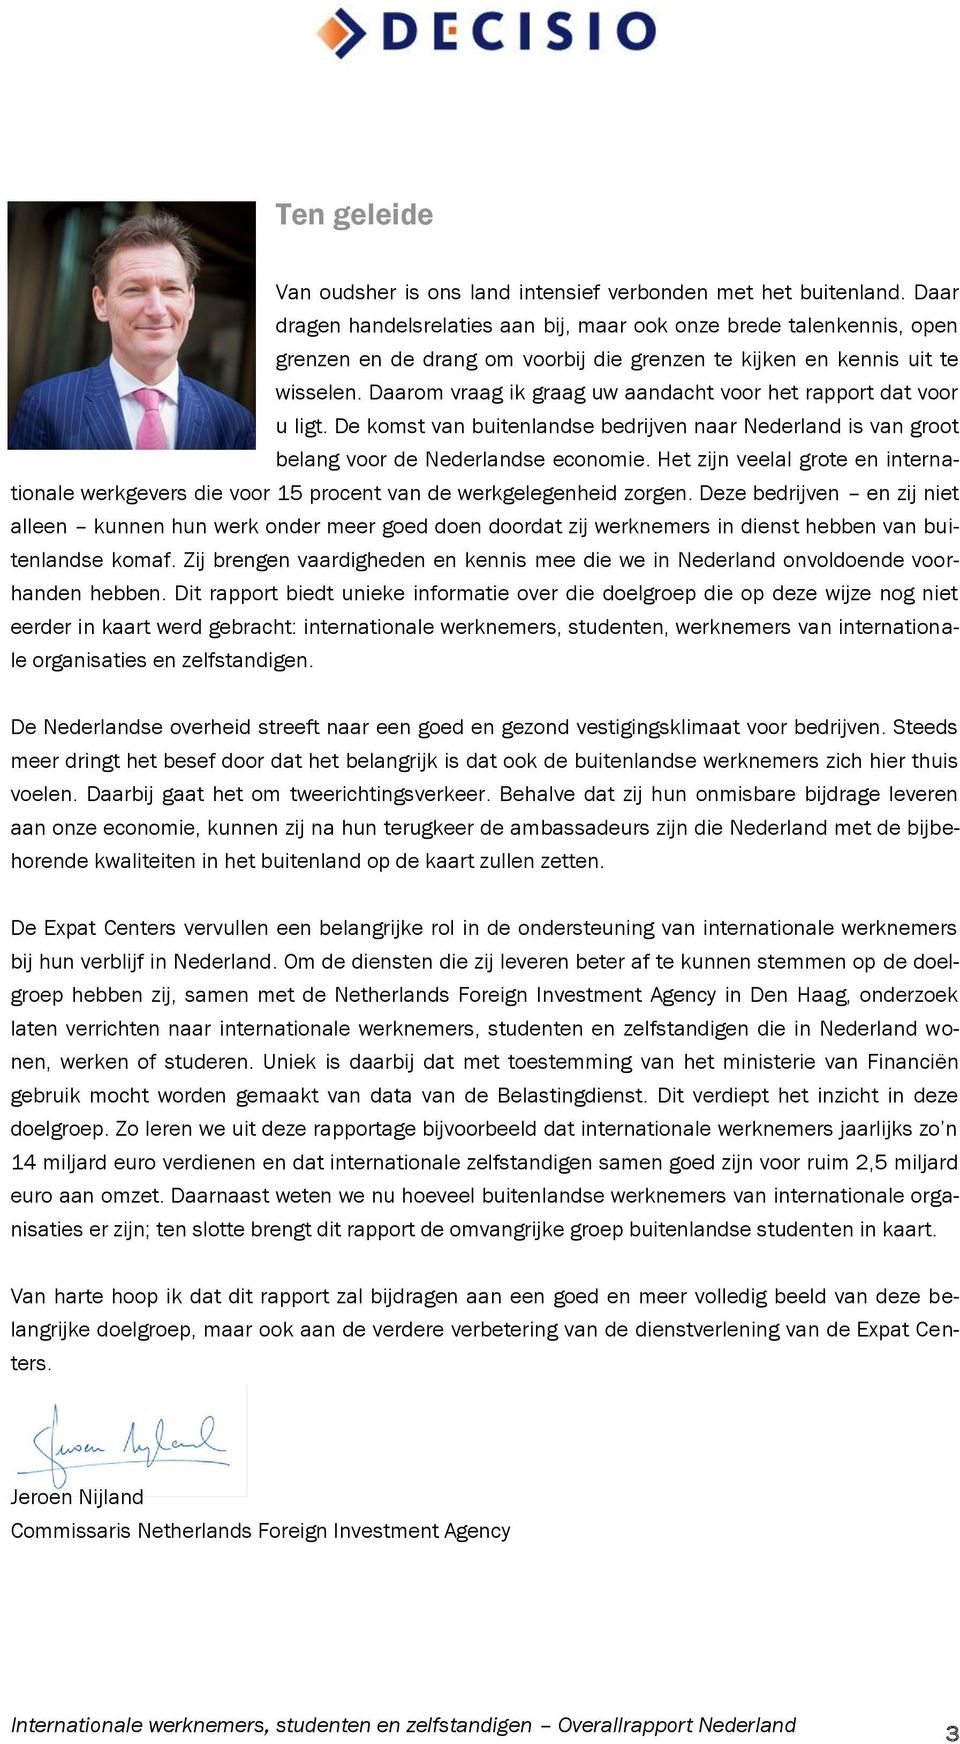 Daarom vraag ik graag uw aandacht voor het rapport dat voor u ligt. De komst van buitenlandse bedrijven naar Nederland is van groot belang voor de Nederlandse economie.